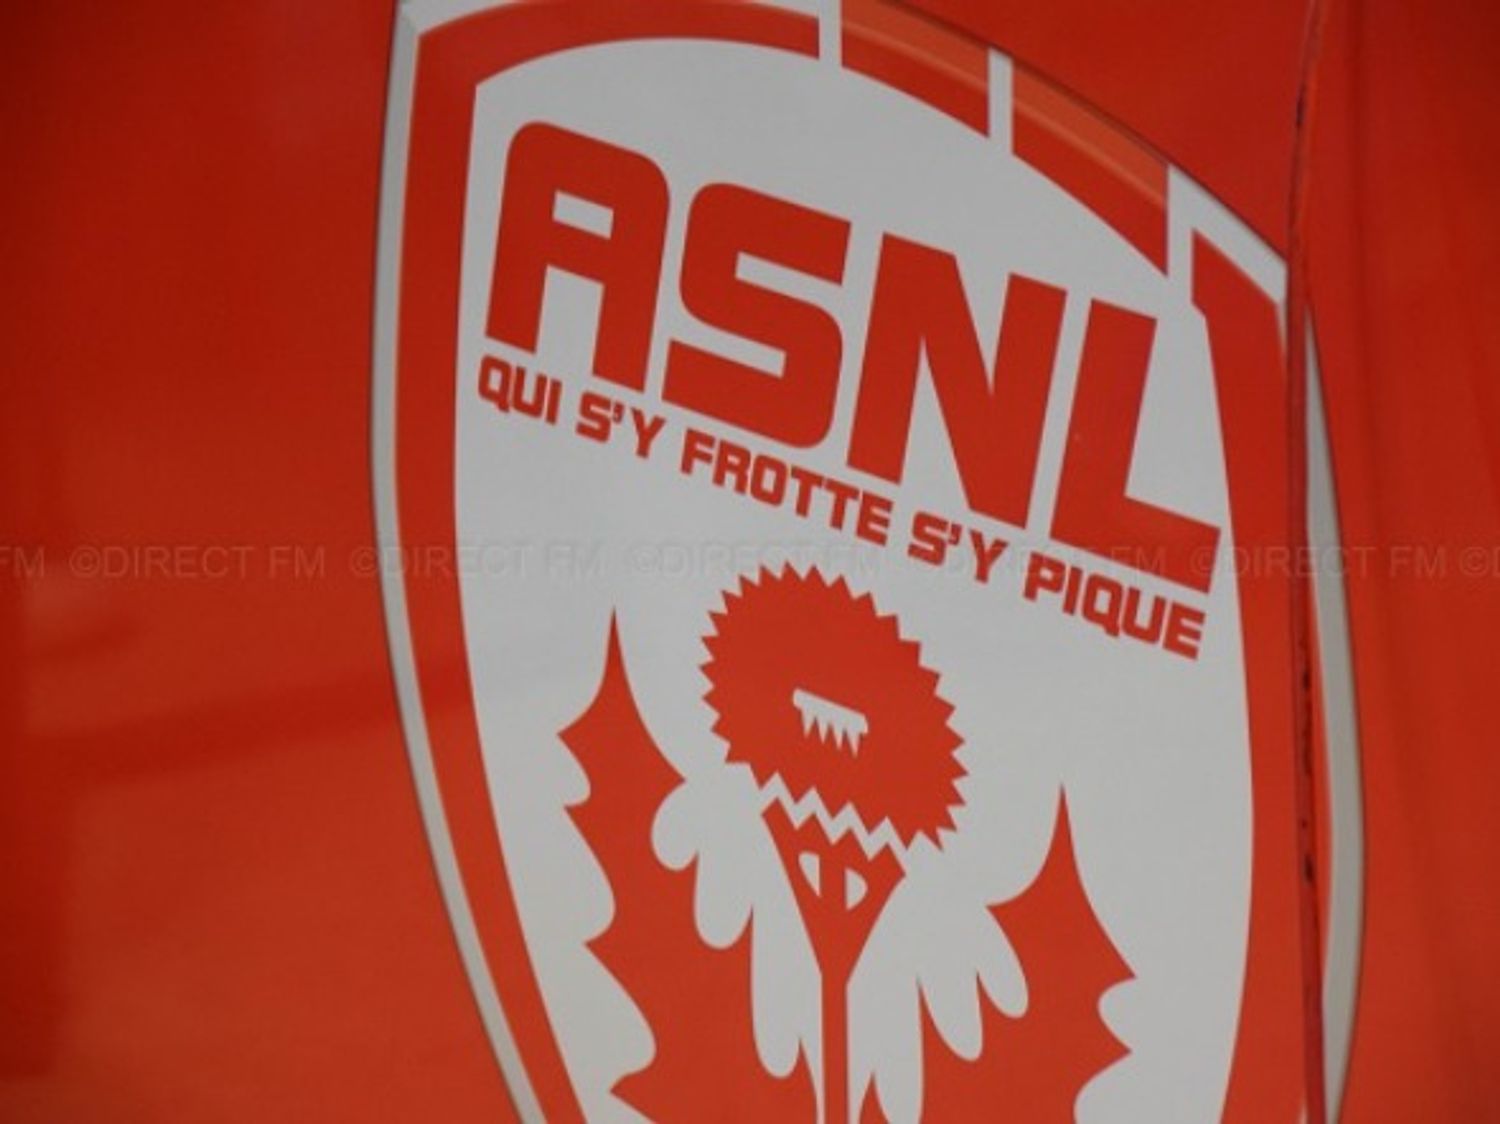 Initiative en lorraine : L’ASNL cherche des donneurs pour sauver...